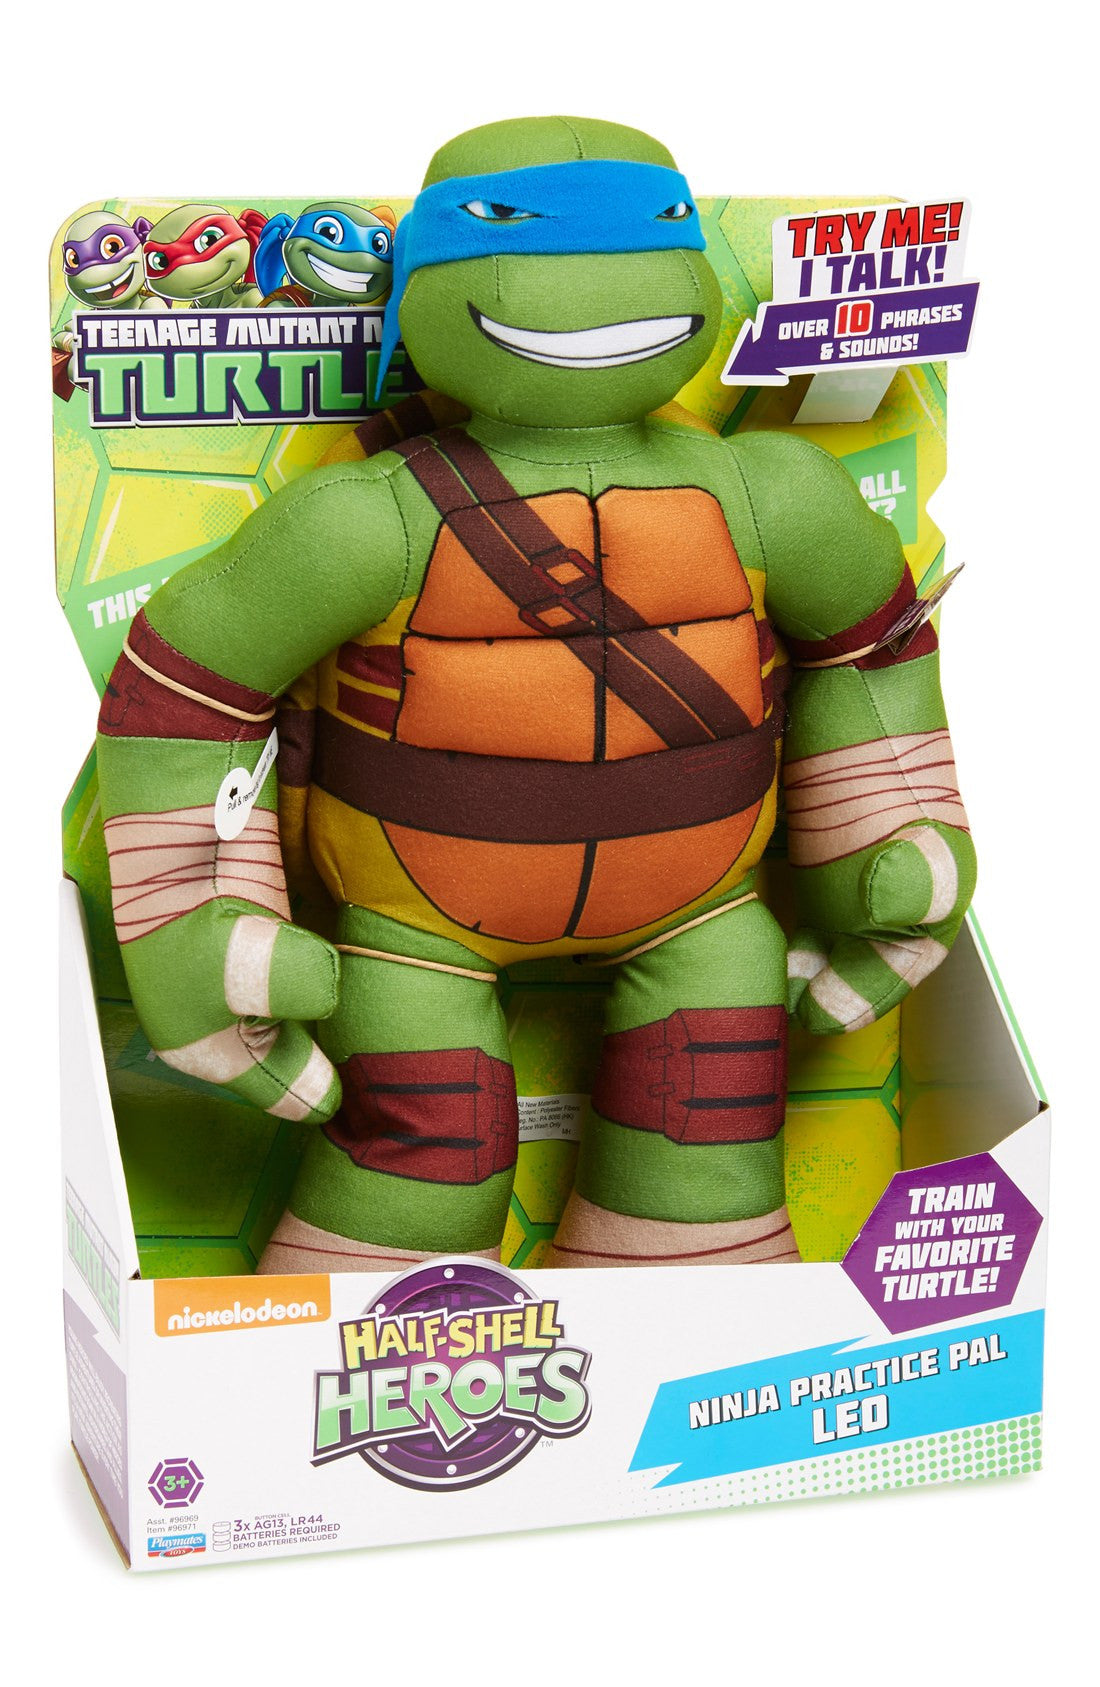 Teenage Mutant Ninja Turtles - Ninja Practice Pal' Talking Stuffed Animal